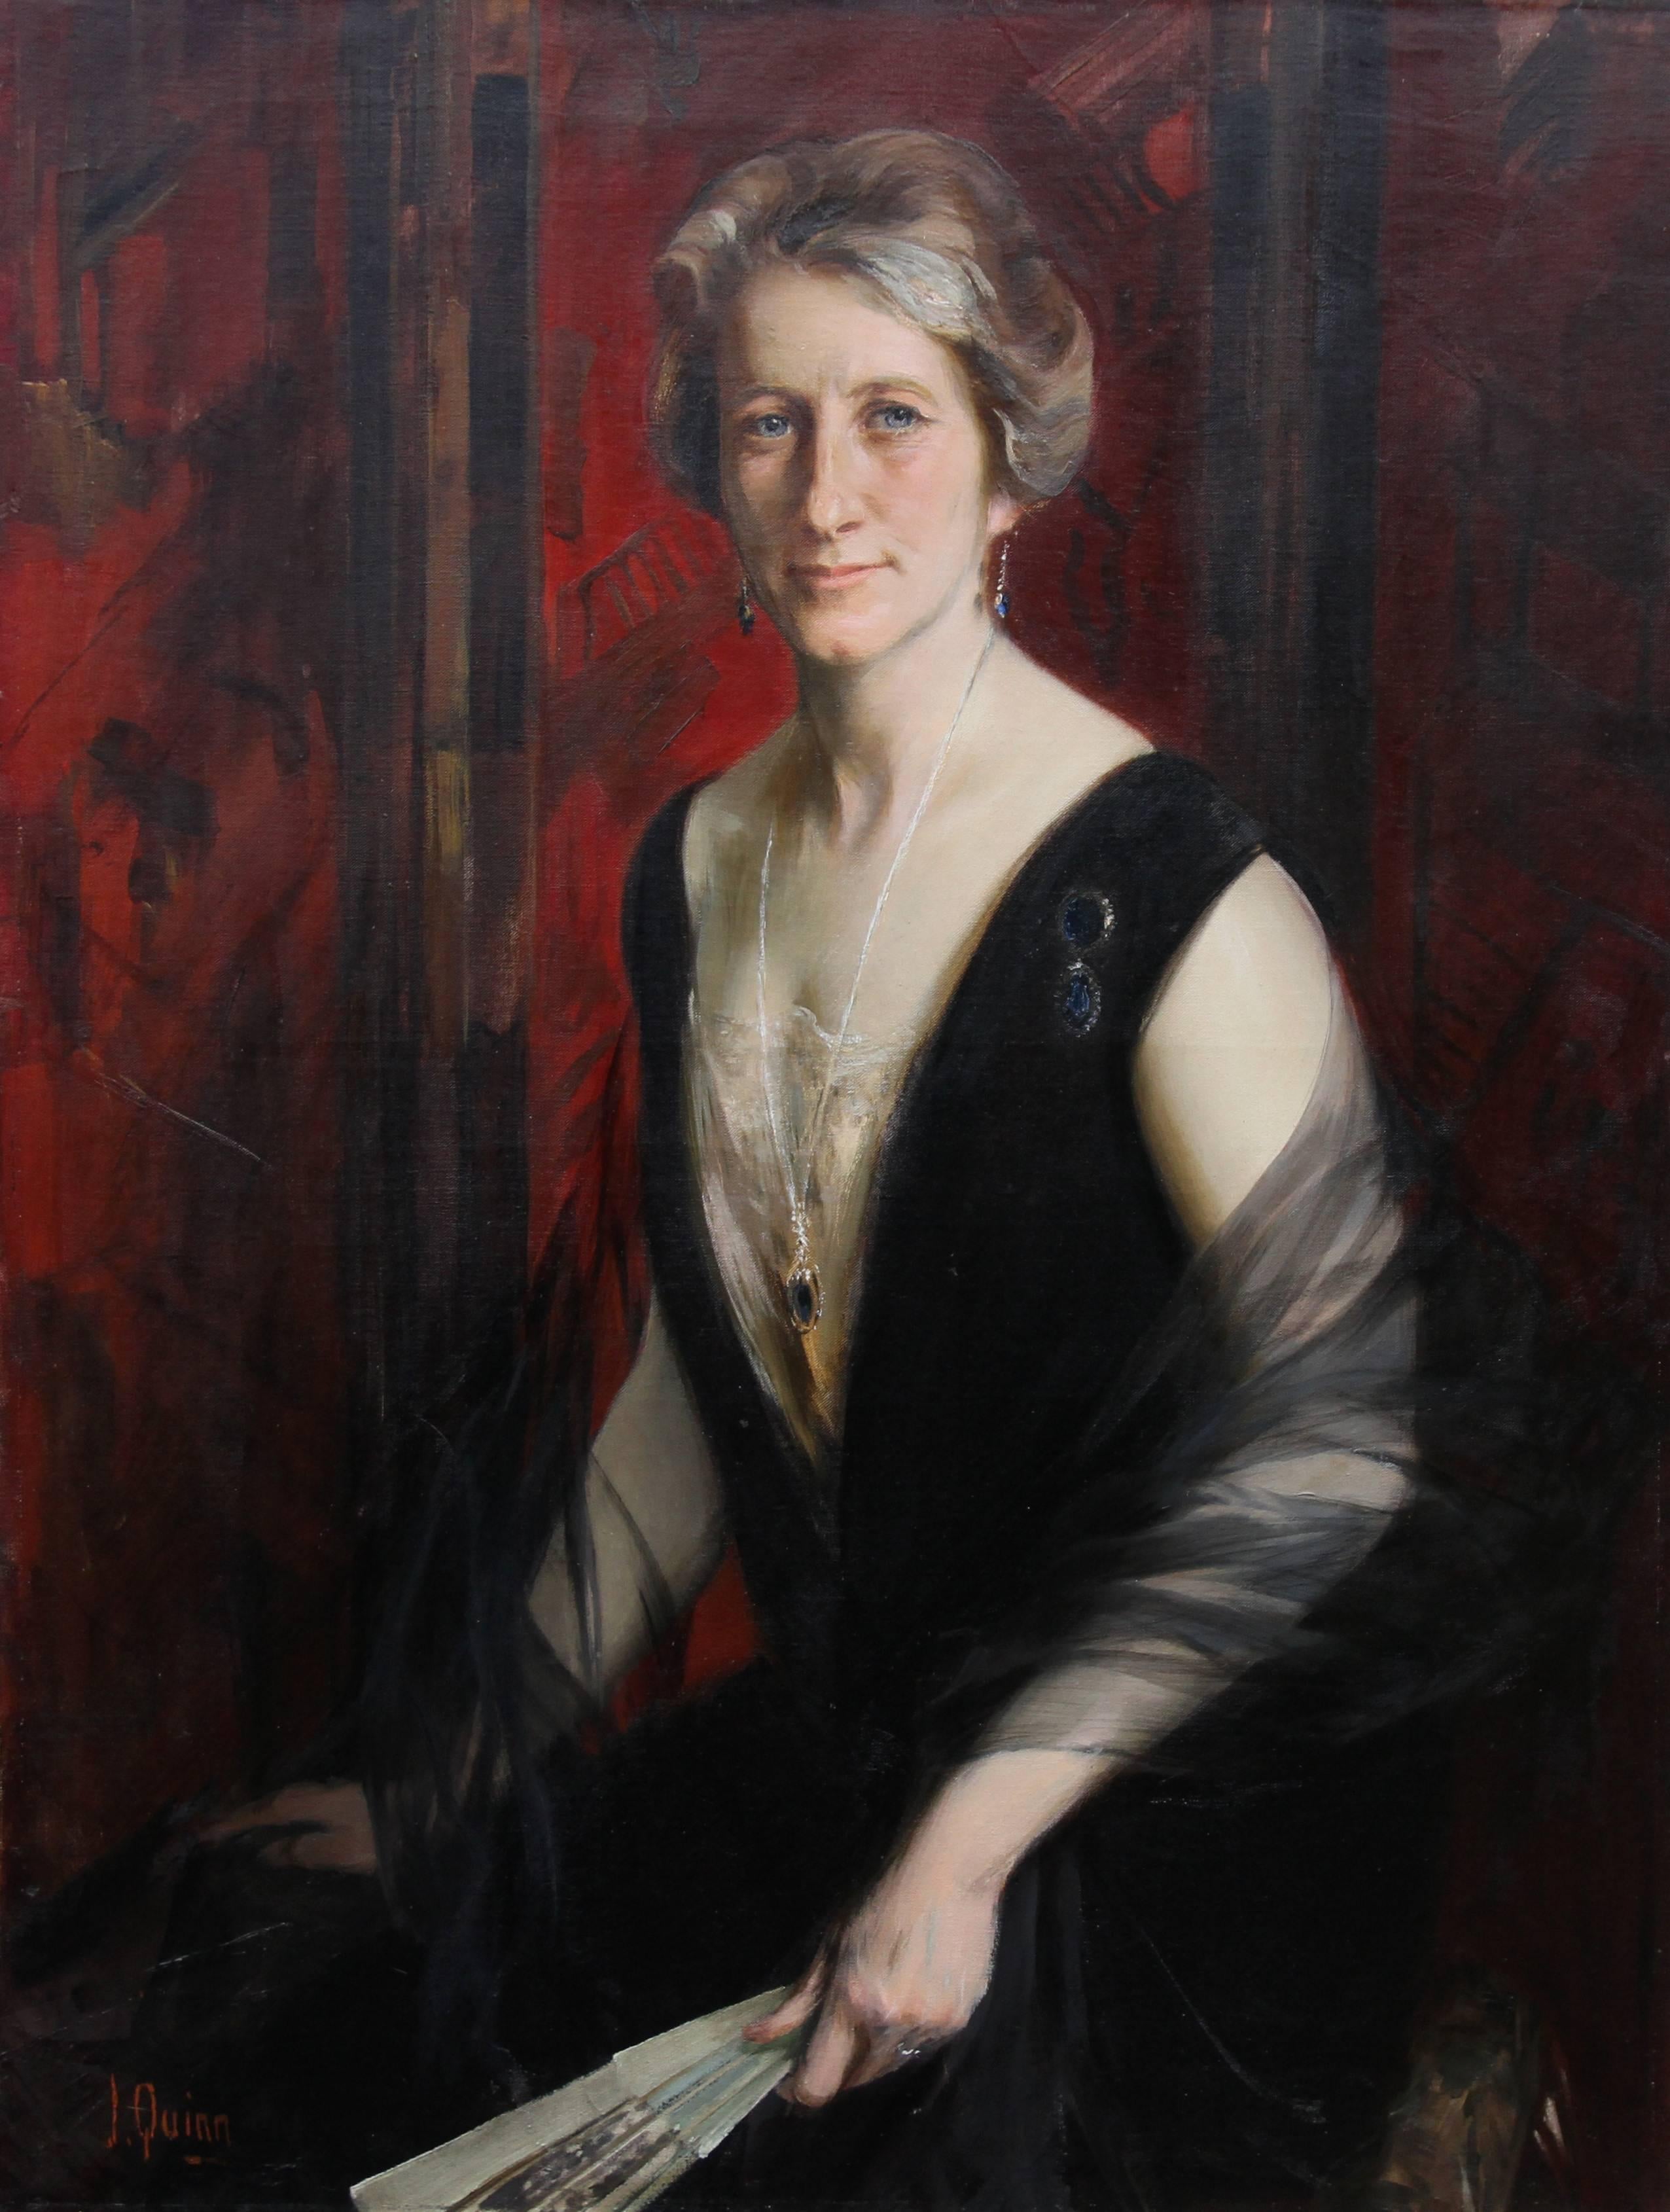 Portrait de Violet Ann Gilbert - Exposition d'art à l'huile britannique des années 1920 - Salon de Paris - Painting de James Peter Quinn